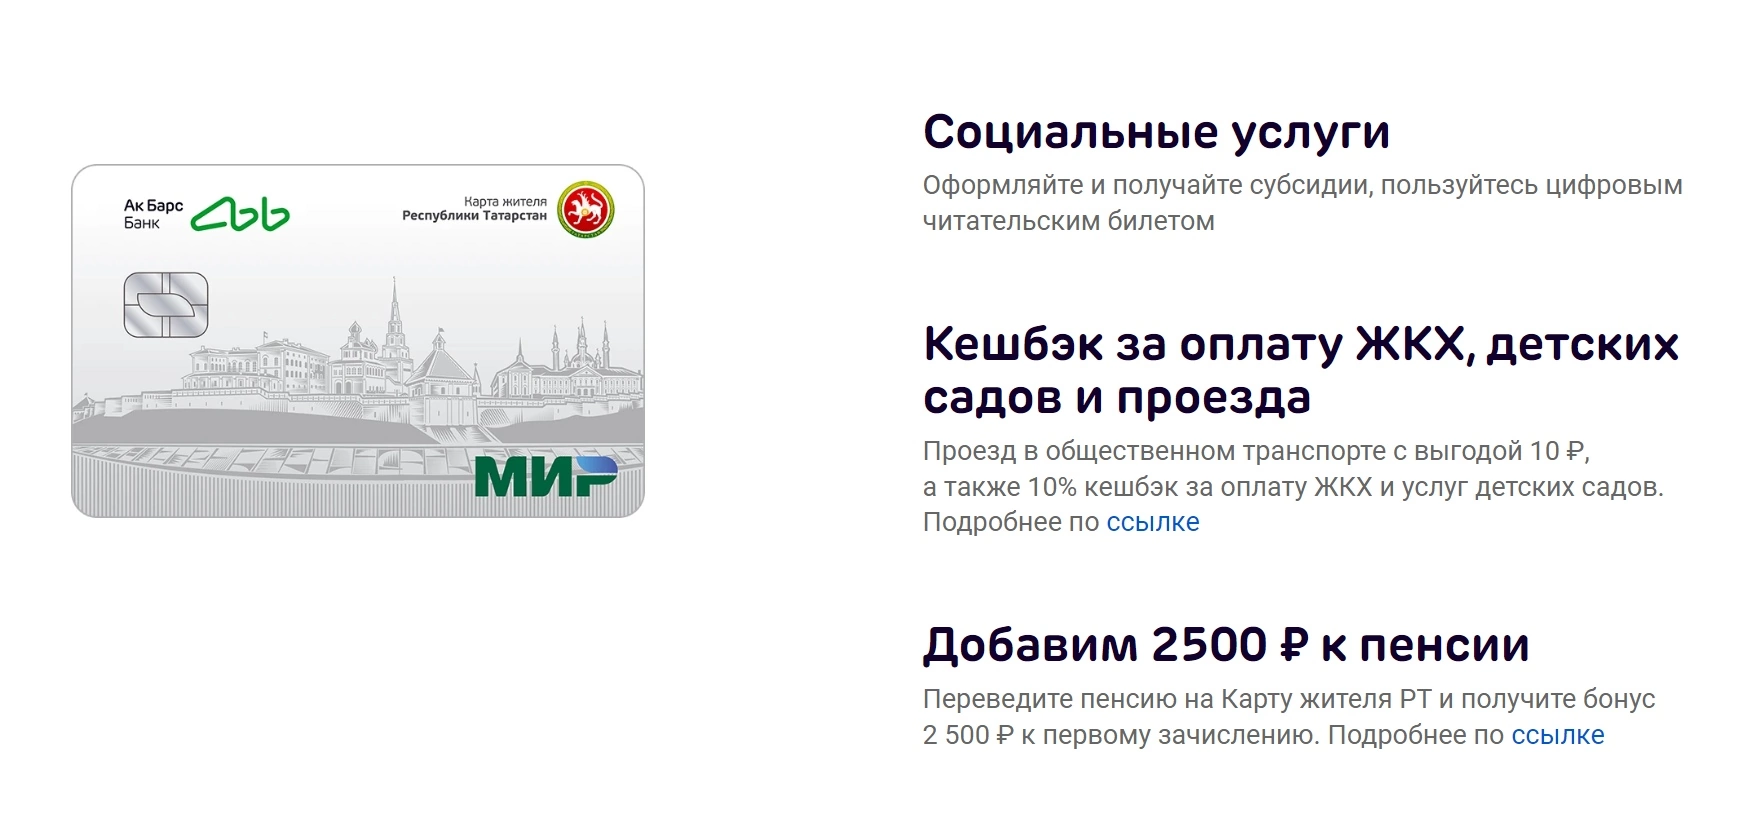 Бонусы для владельцев карты жителя Республики Татарстан